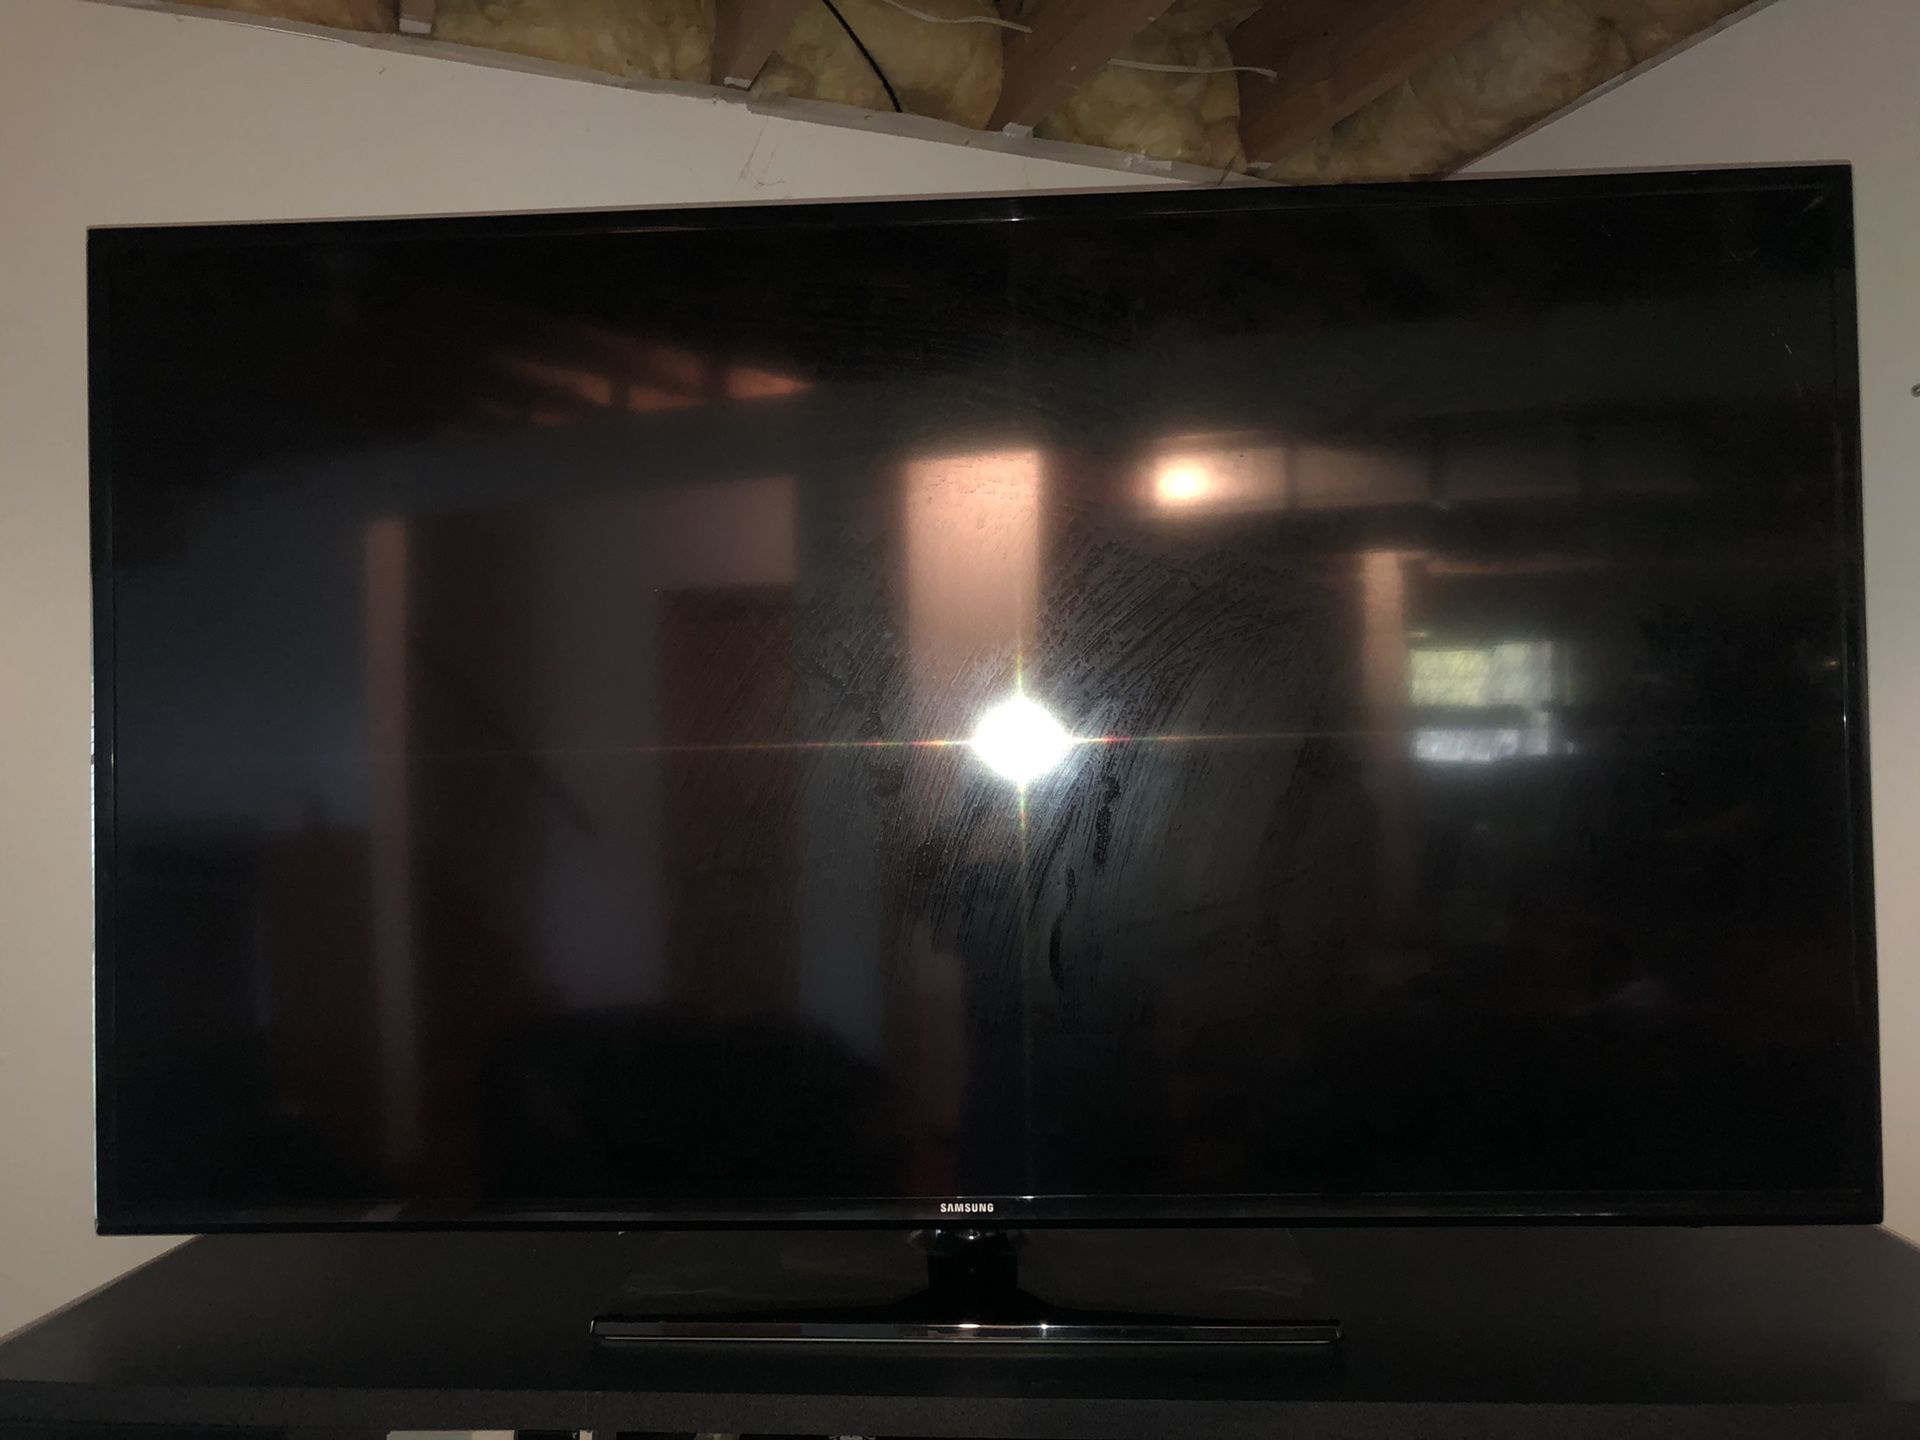 60 inch Samsung flatscreen TV (not smart tv)